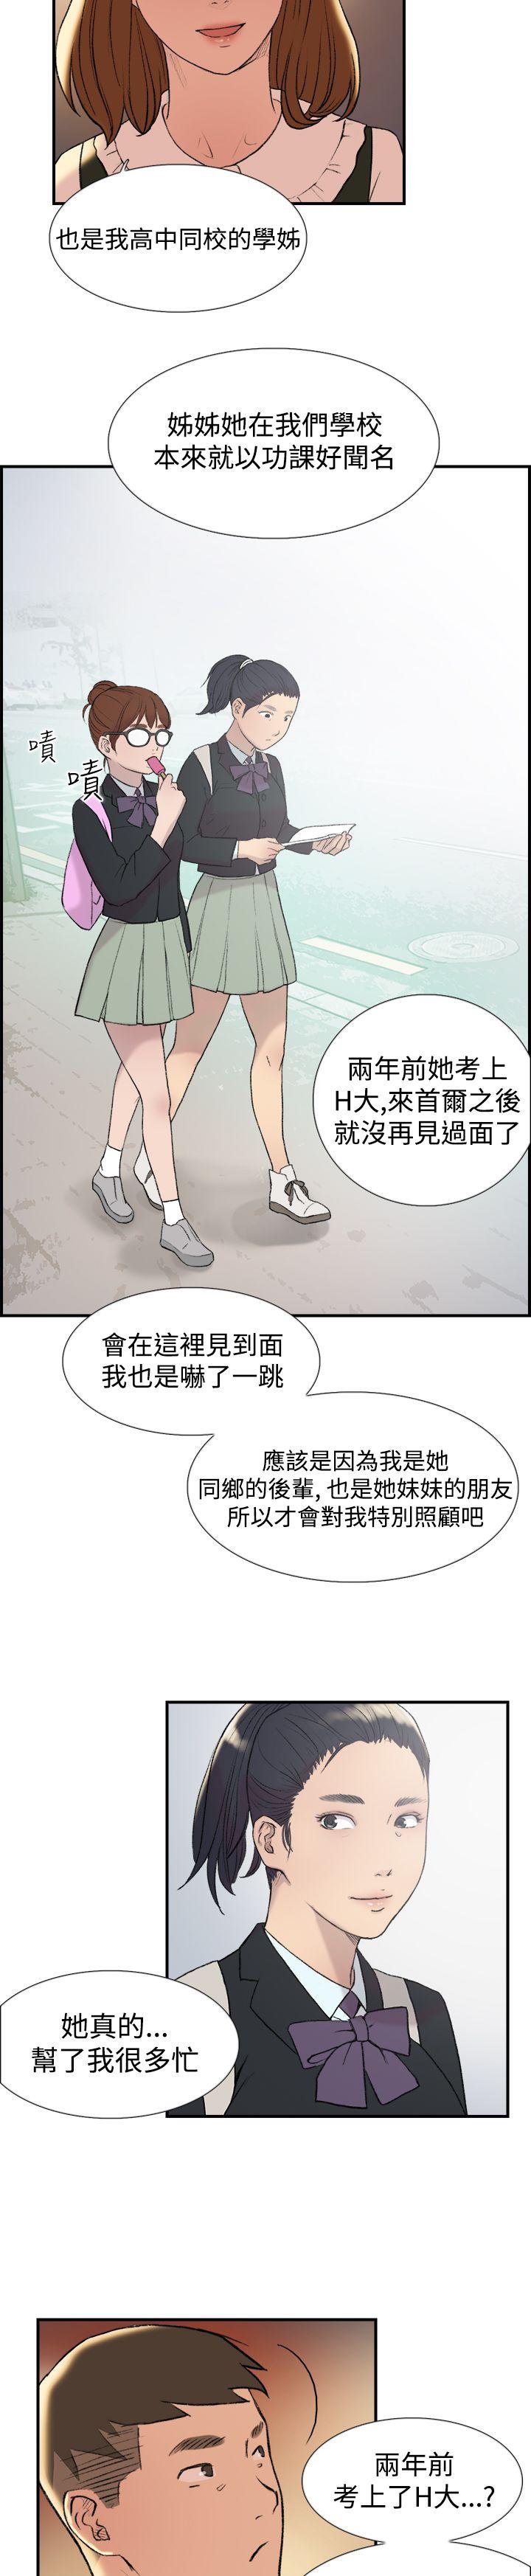 韩国污漫画 雙重戀愛 第15话 20